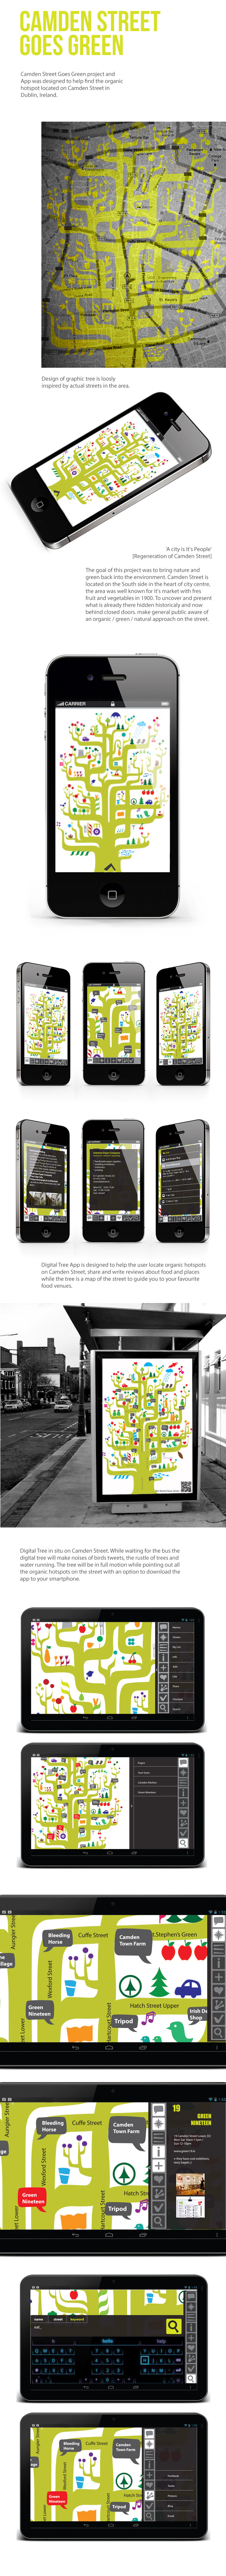 Digital Trees green dublin regeneration Camden Street  app interactive design map